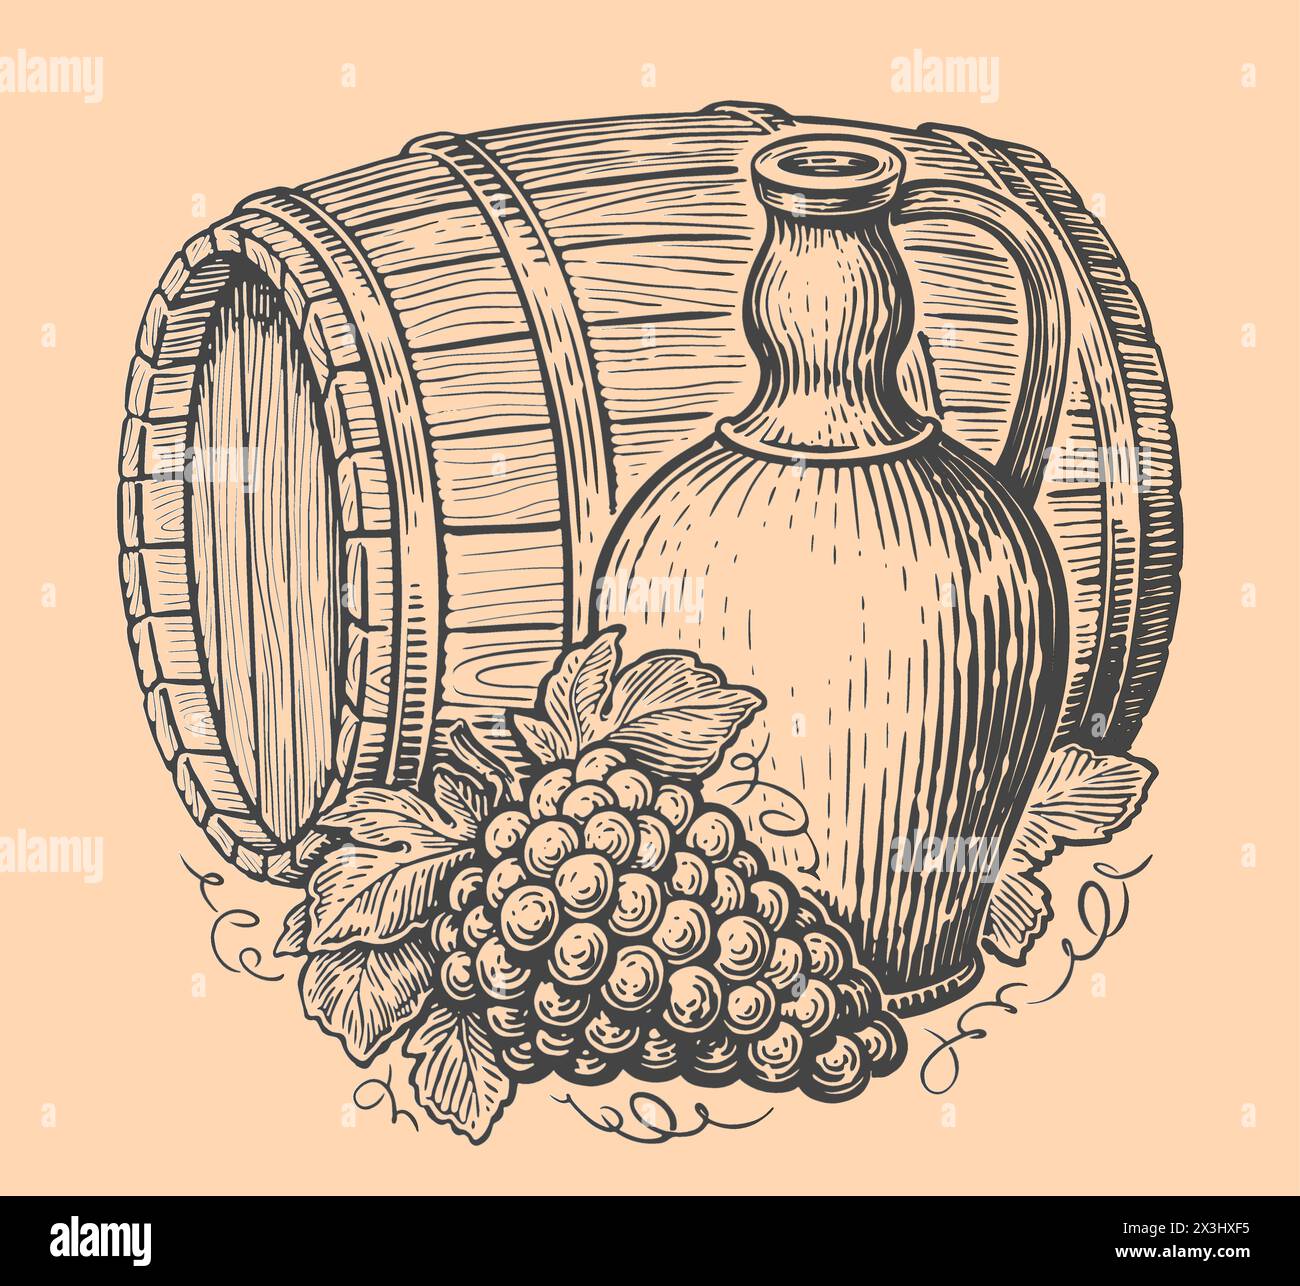 Concetto di vino e bevanda. Caraffa, grappolo di uva e botte di legno. Schizzo di illustrazione vettoriale vintage Illustrazione Vettoriale